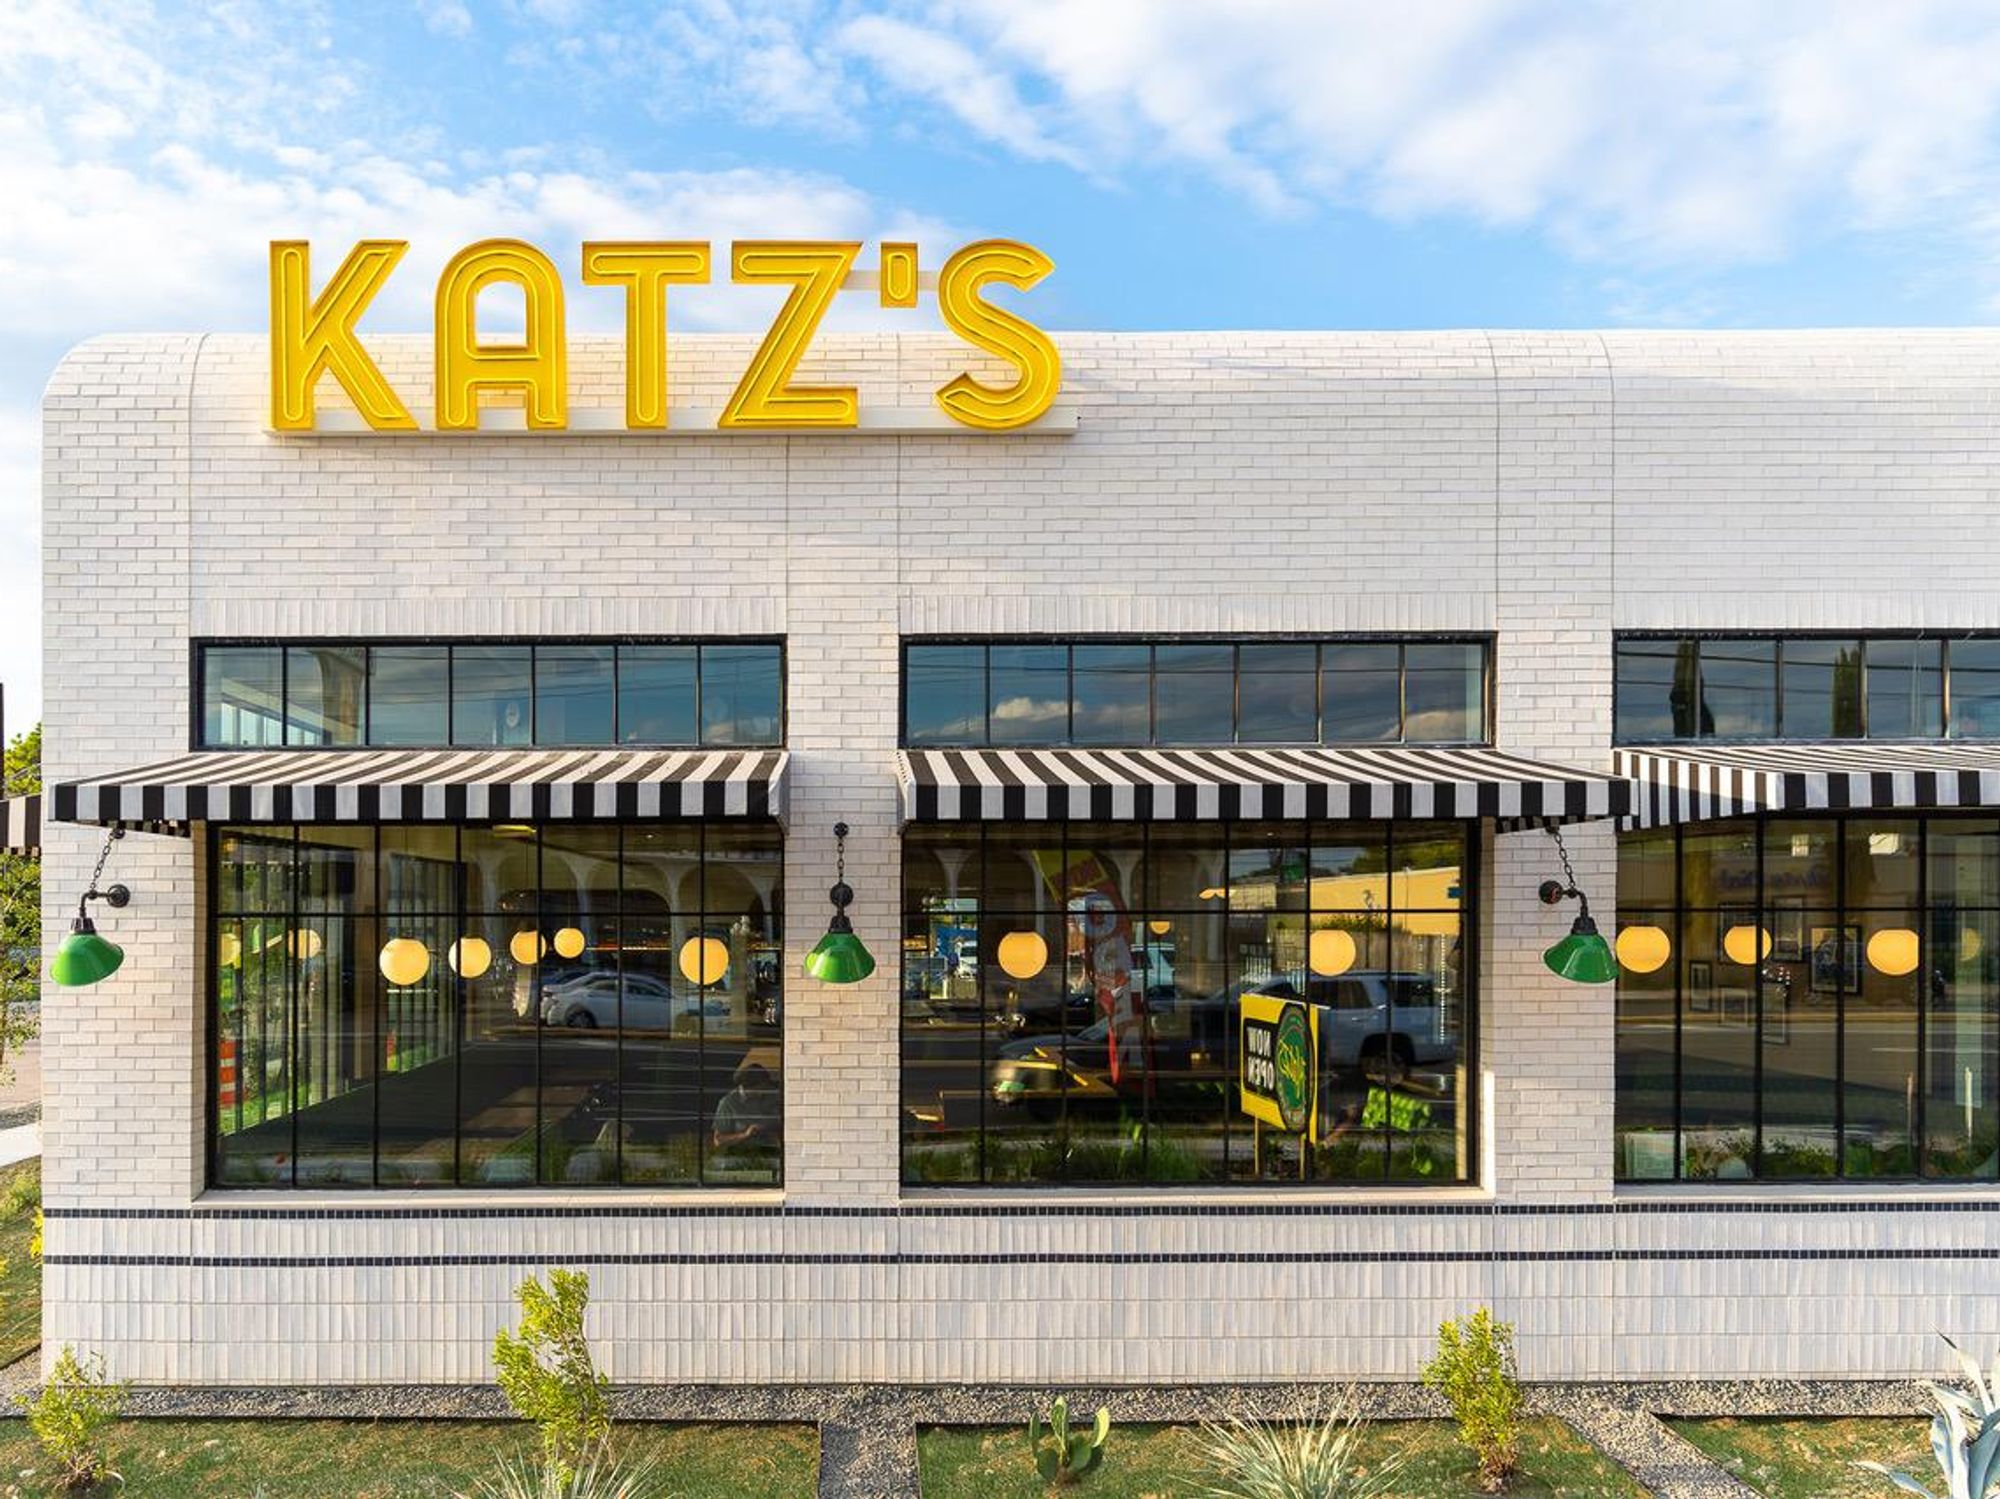 Katz's restaurant Galleria location exterior